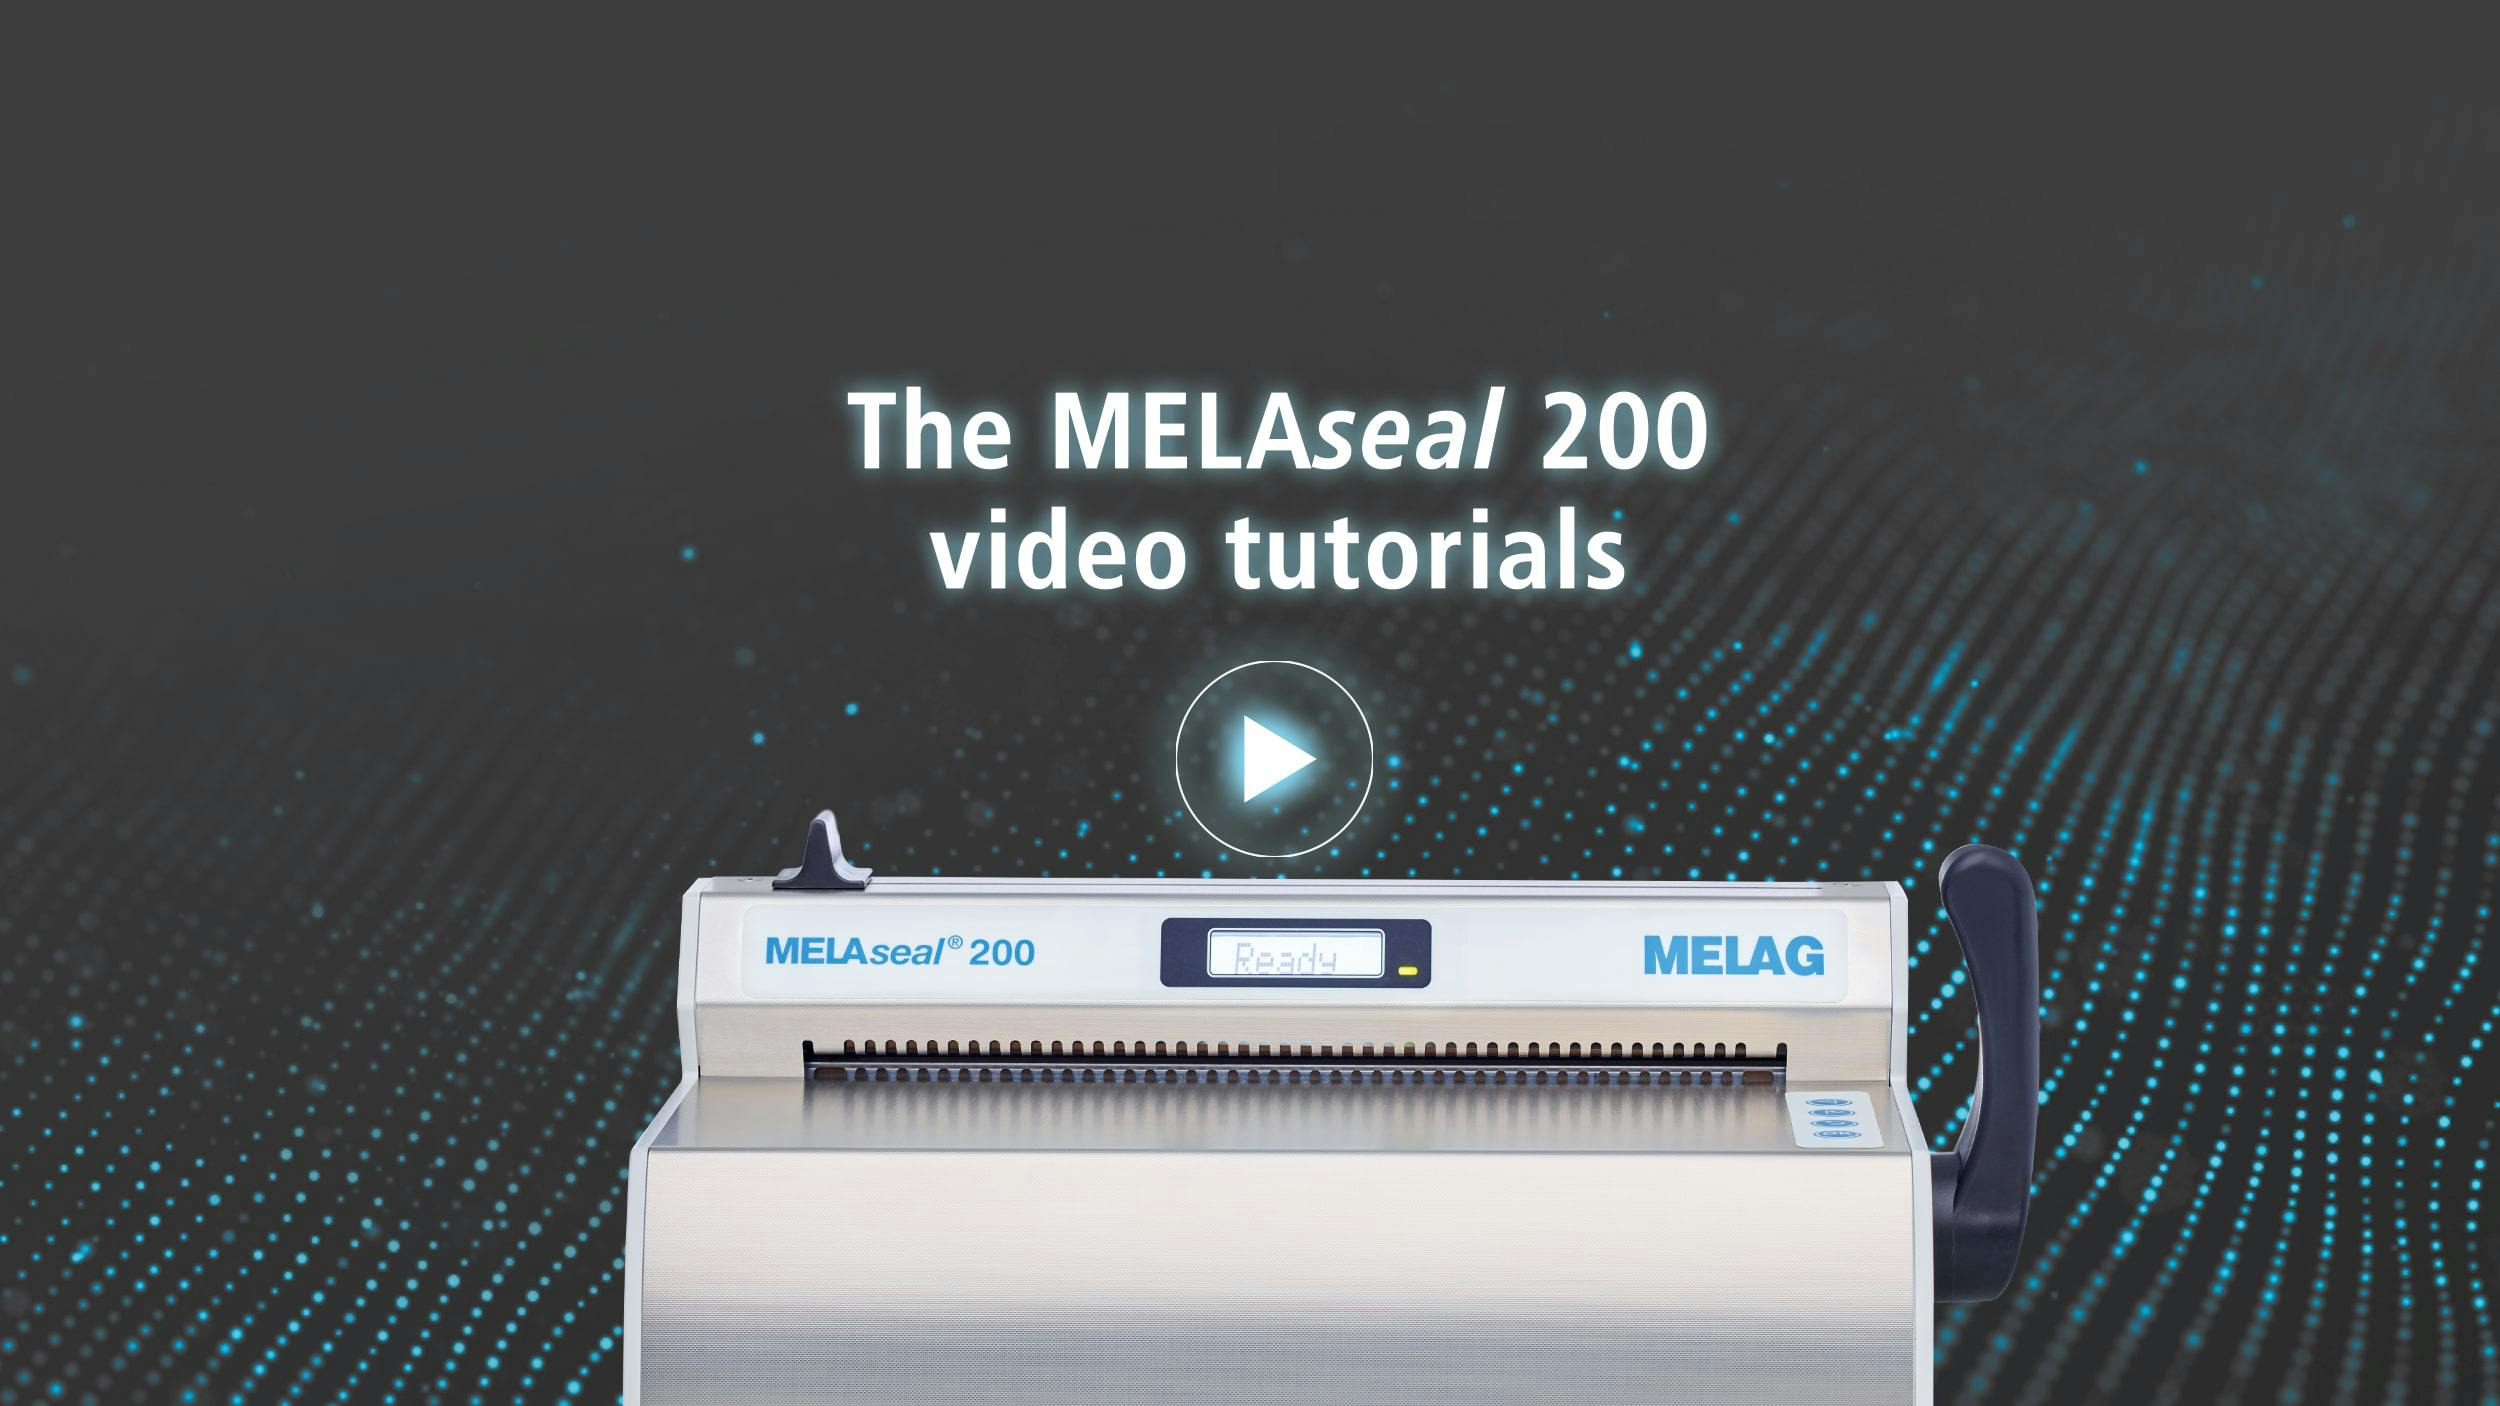 MELAseal 200 Tutorials